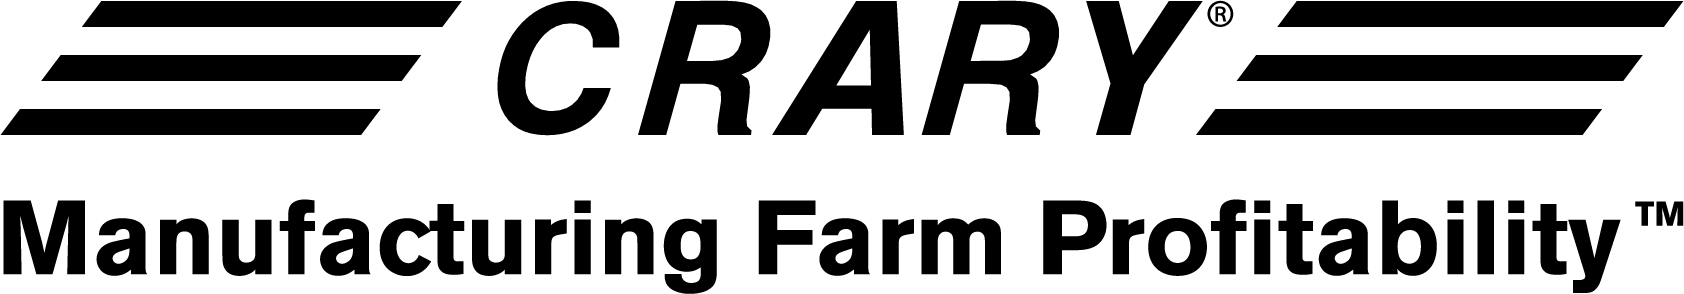 crary logo